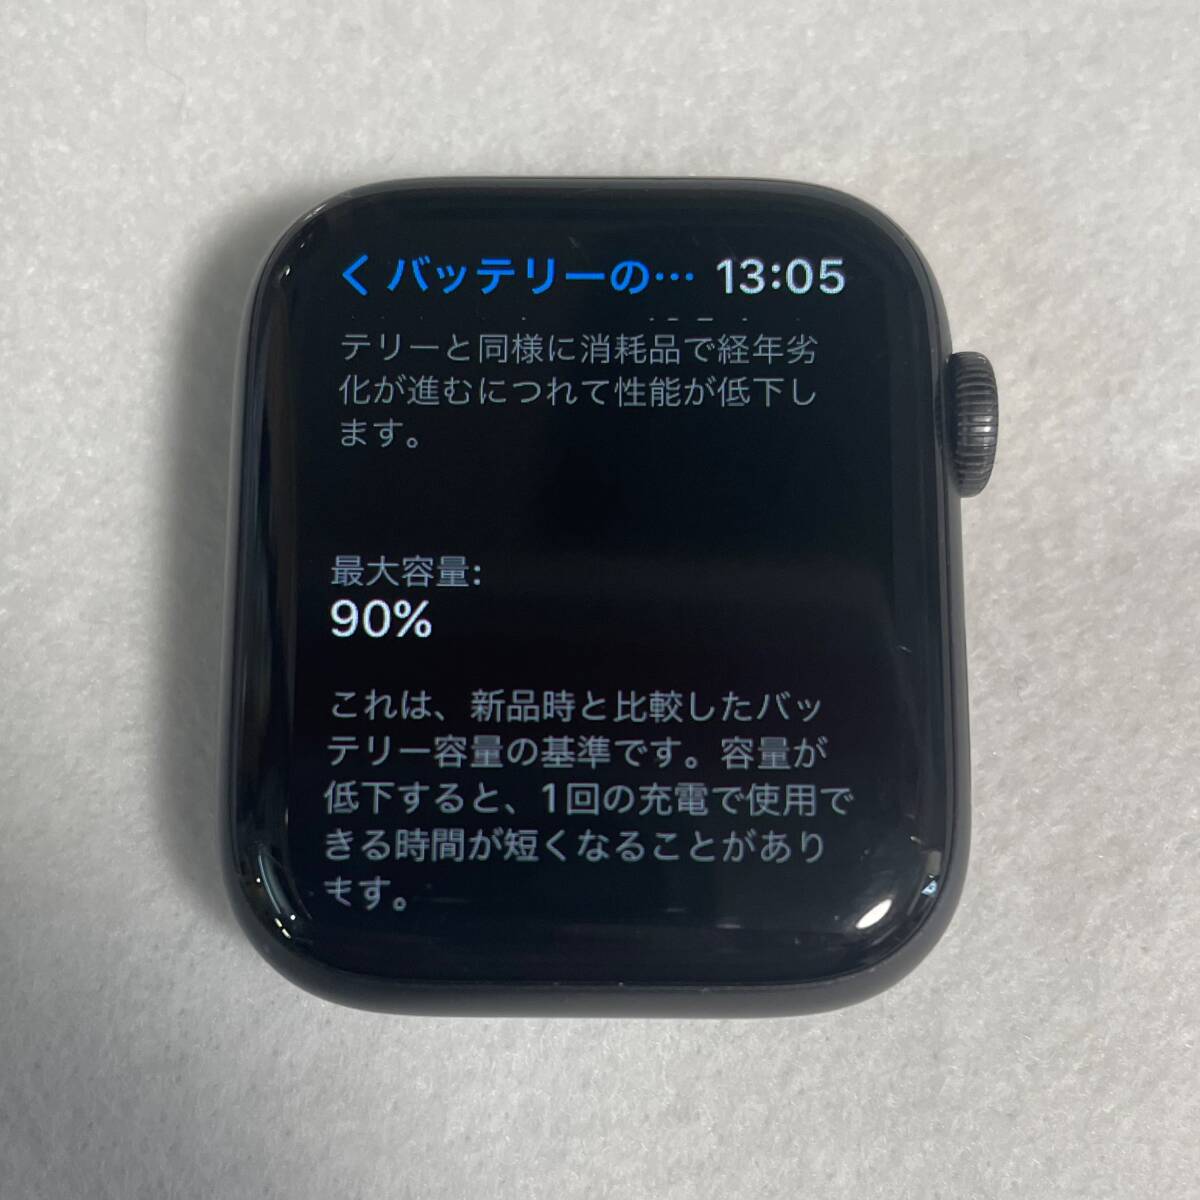 [ б/у ]Apple Watch Series 6 44mm GPS модель [A2292] aluminium кейс * корпус только аккумулятор состояние 90%* 03081N